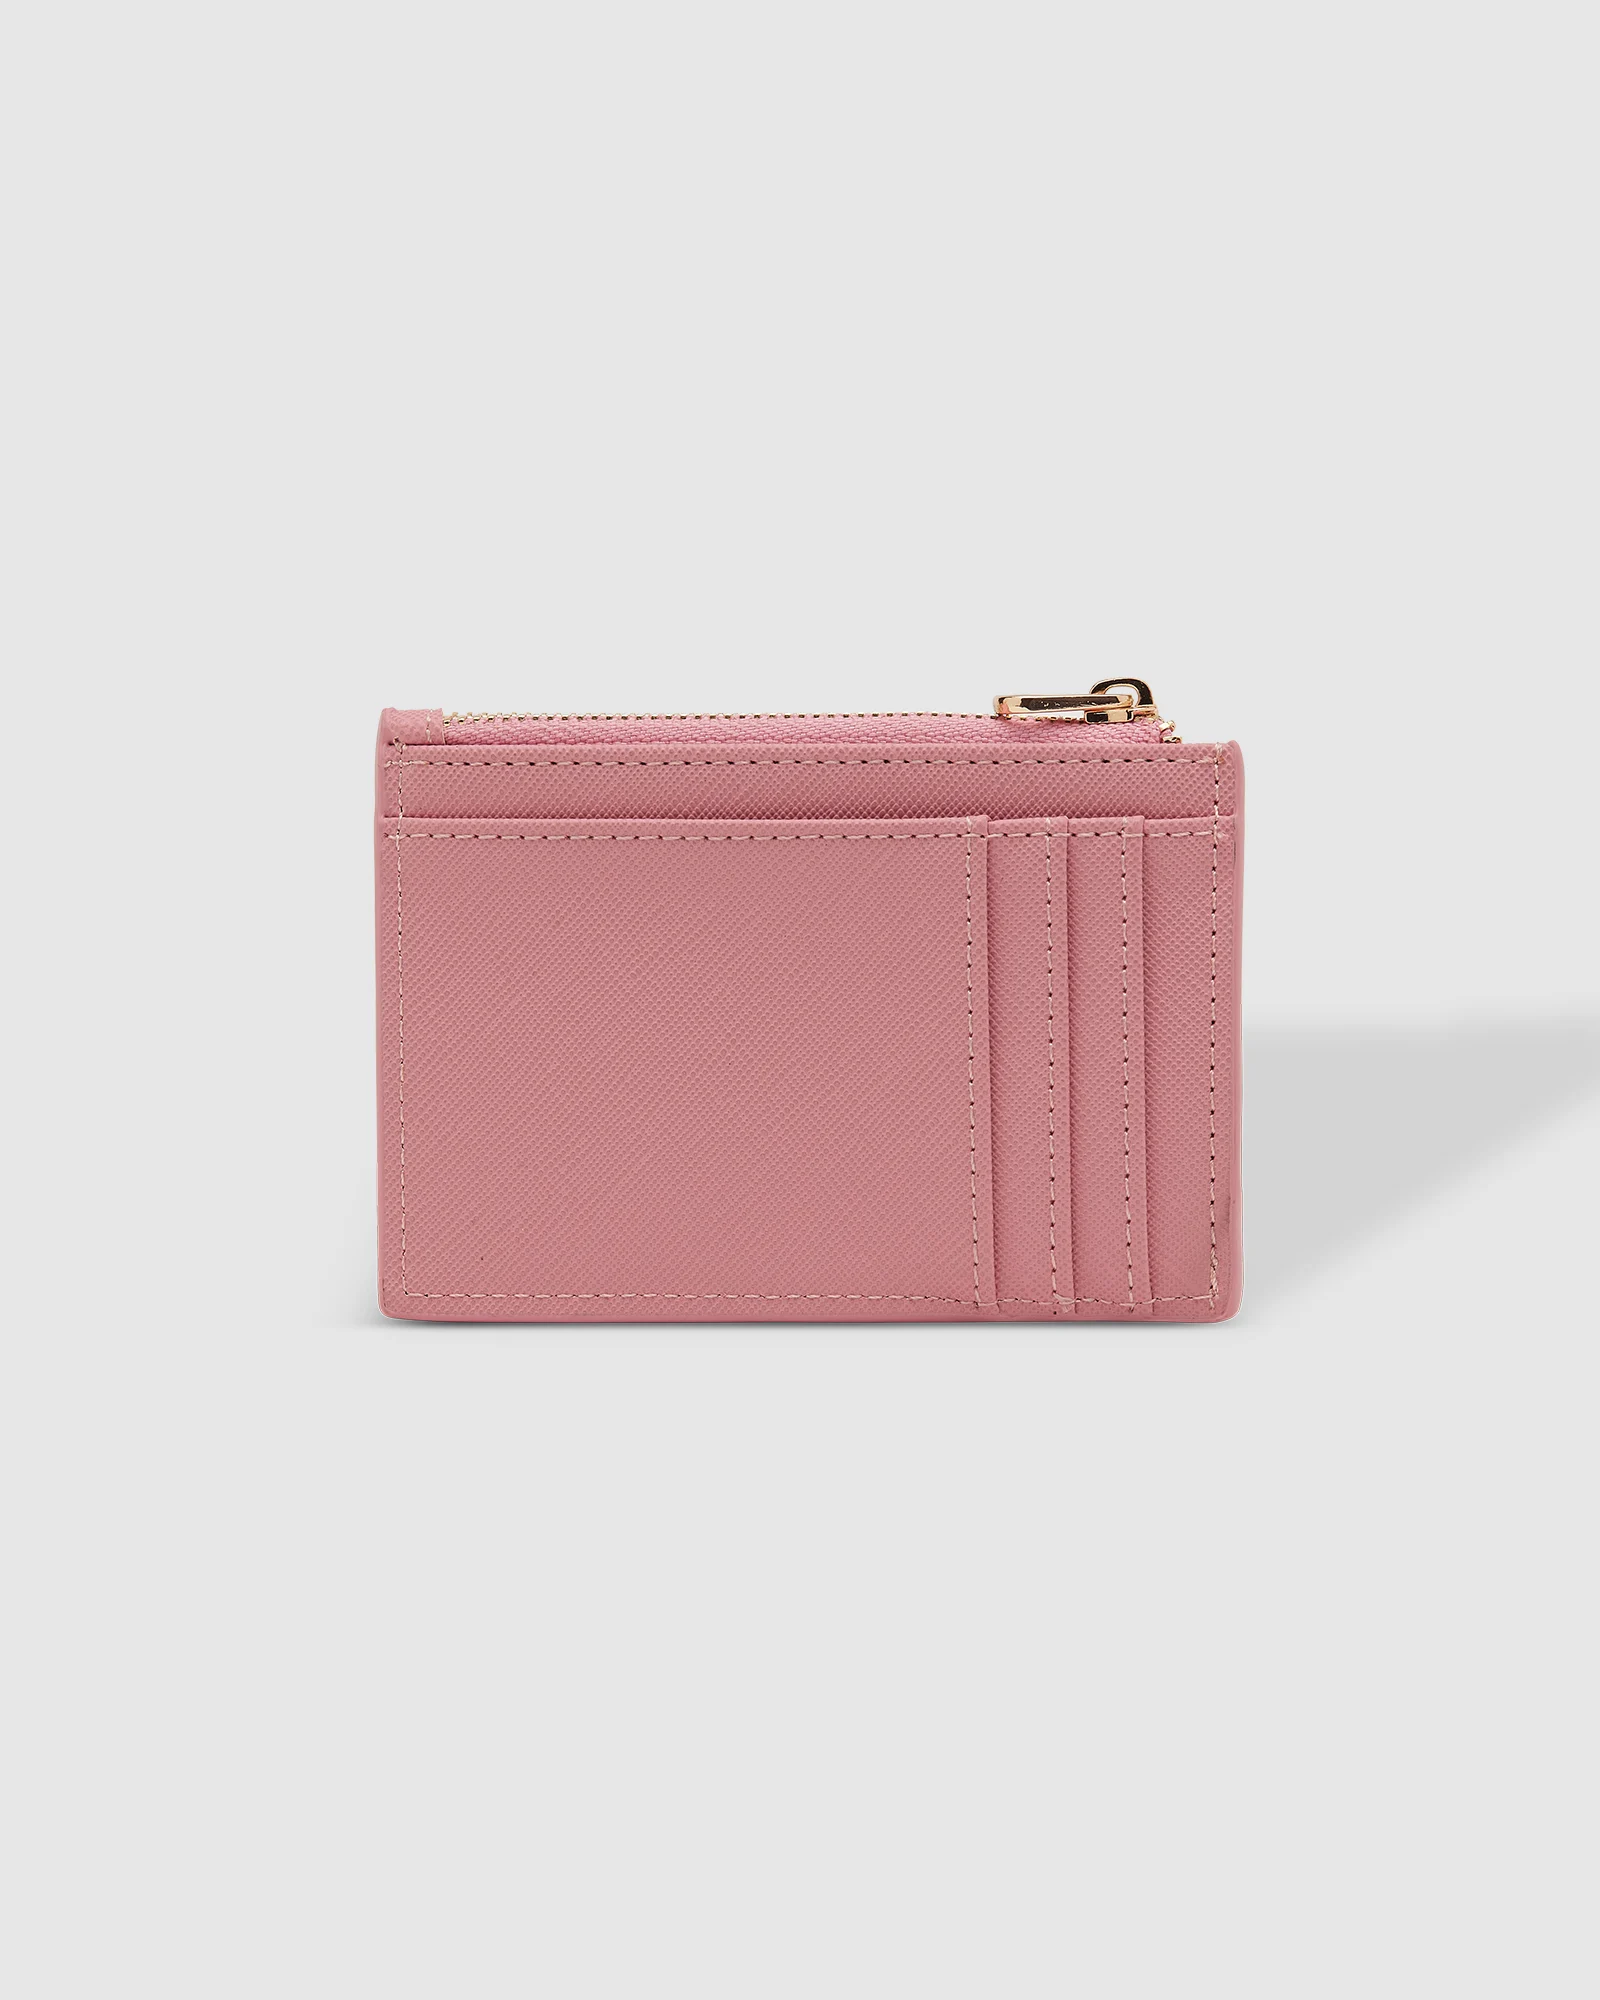 Louenhide Cara Cardholder - Bubblegum Accessories - Other Accessories - Handbags & Wallets by Louenhide | Grace the Boutique